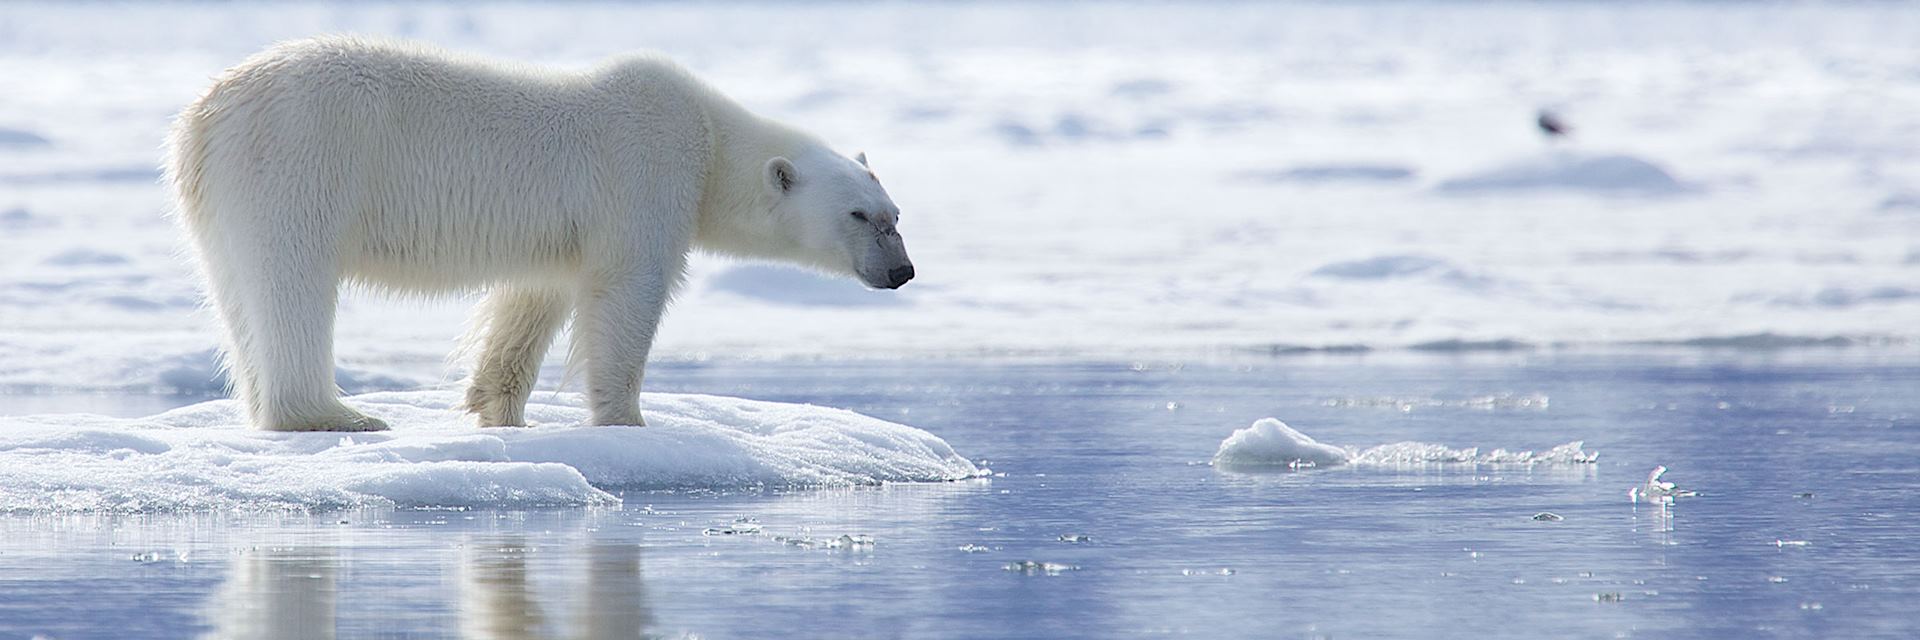 Polar bear on pack ice